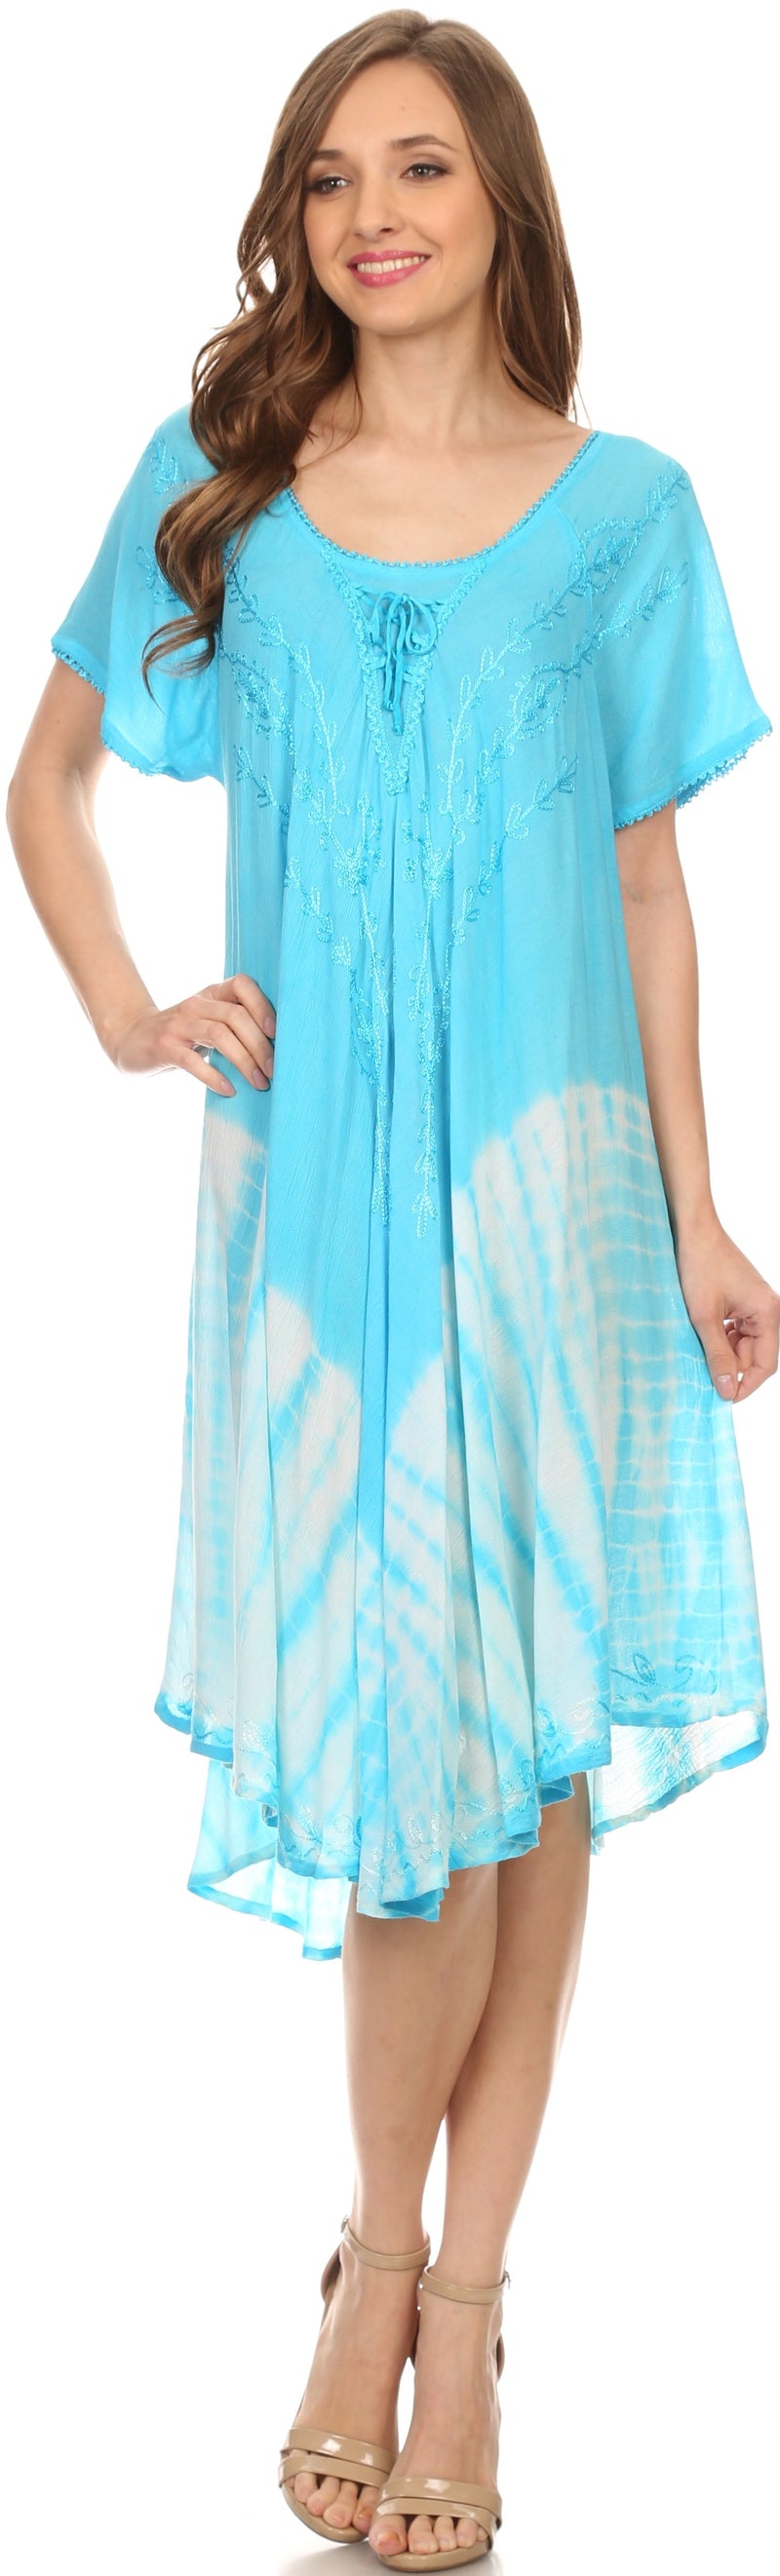 Sakkas Ballari Mid Length Cap Sleeve Embroidered Batik Caftan Dress / Cover Up